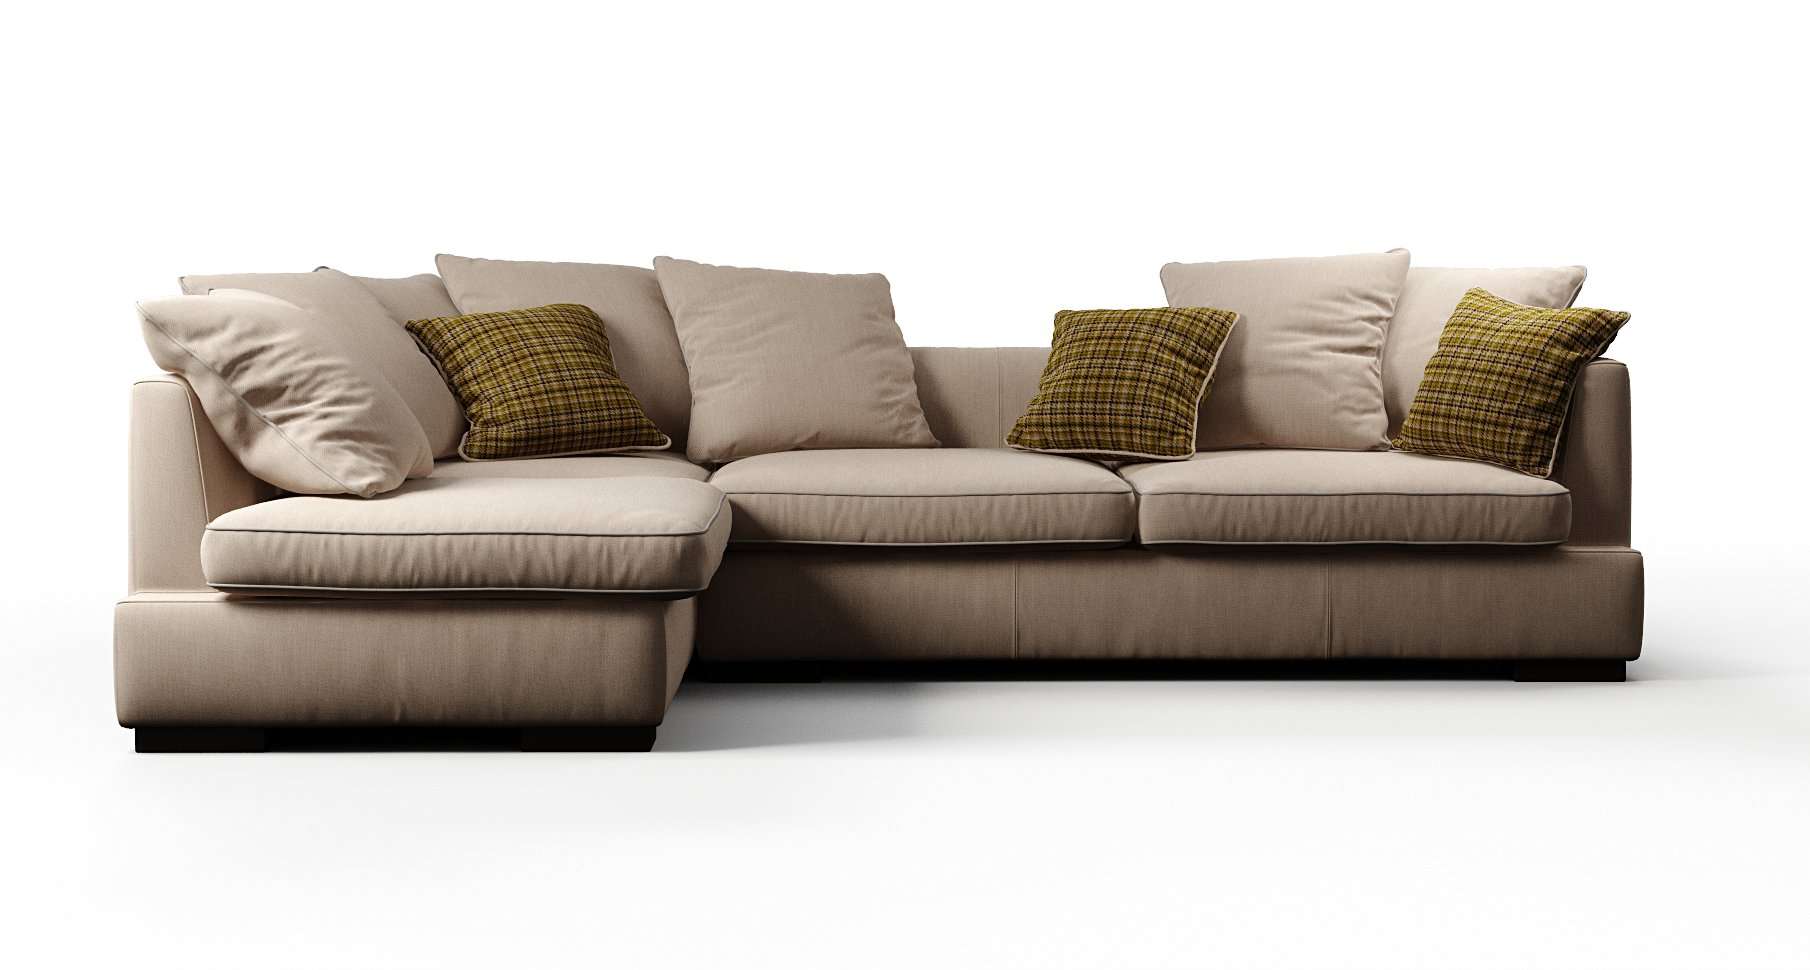 Ipsoni sofa